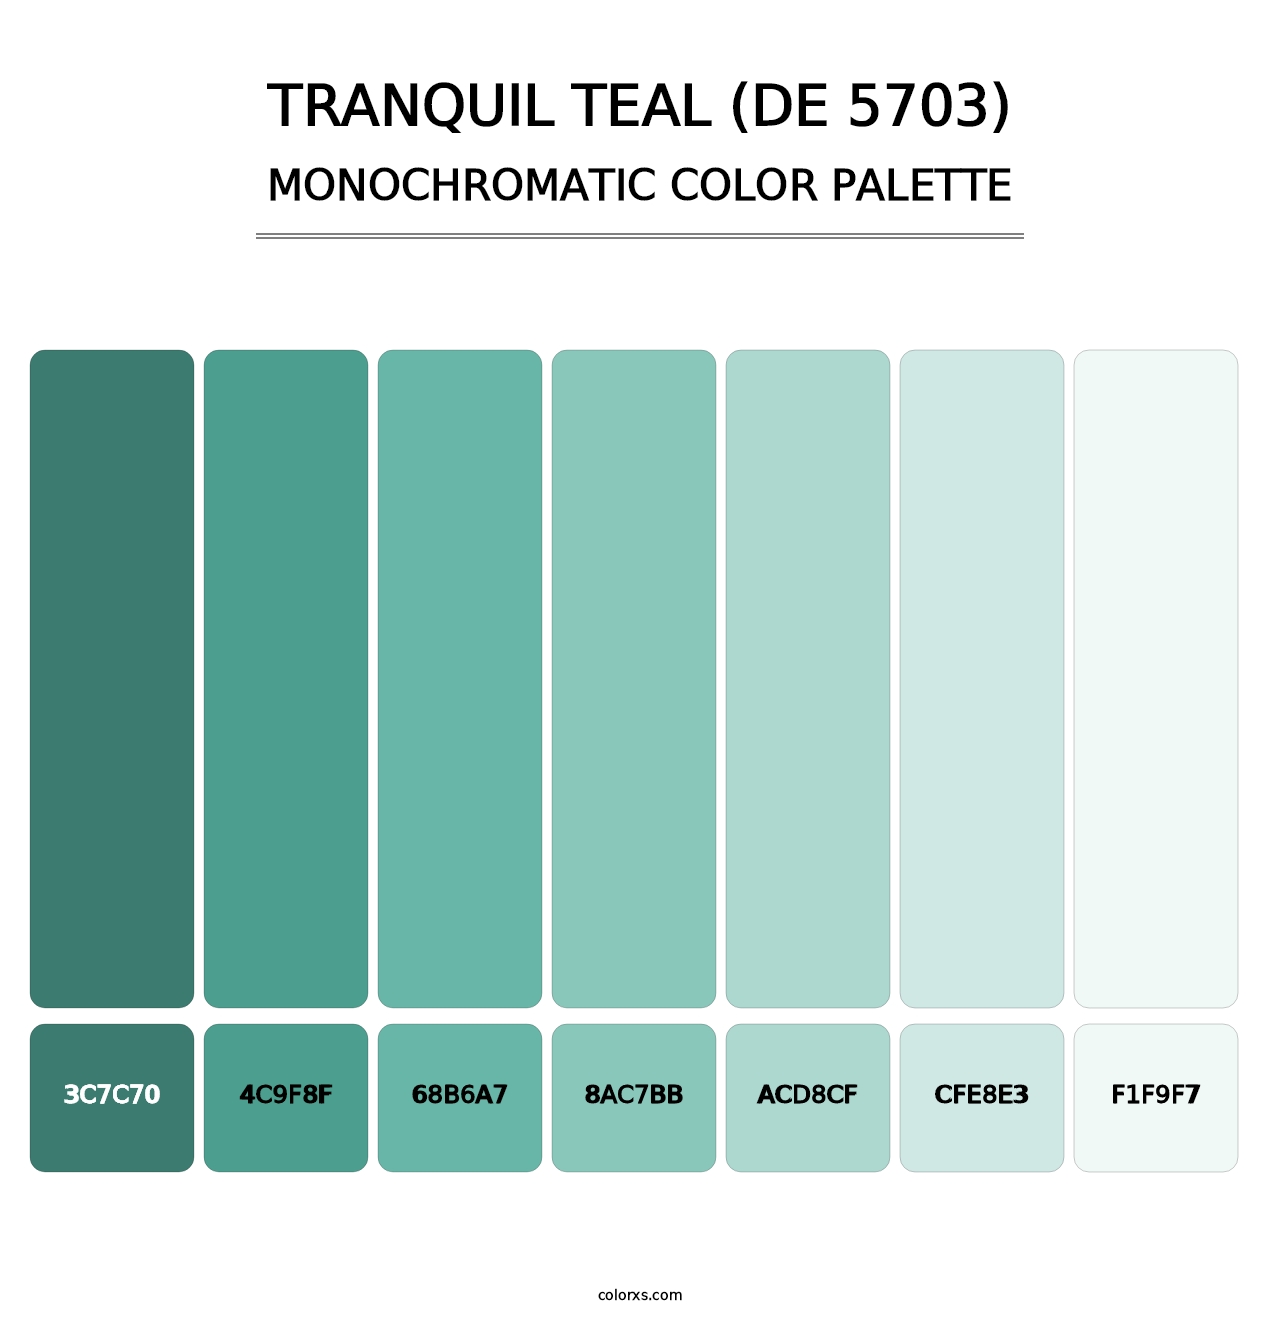 Tranquil Teal (DE 5703) - Monochromatic Color Palette